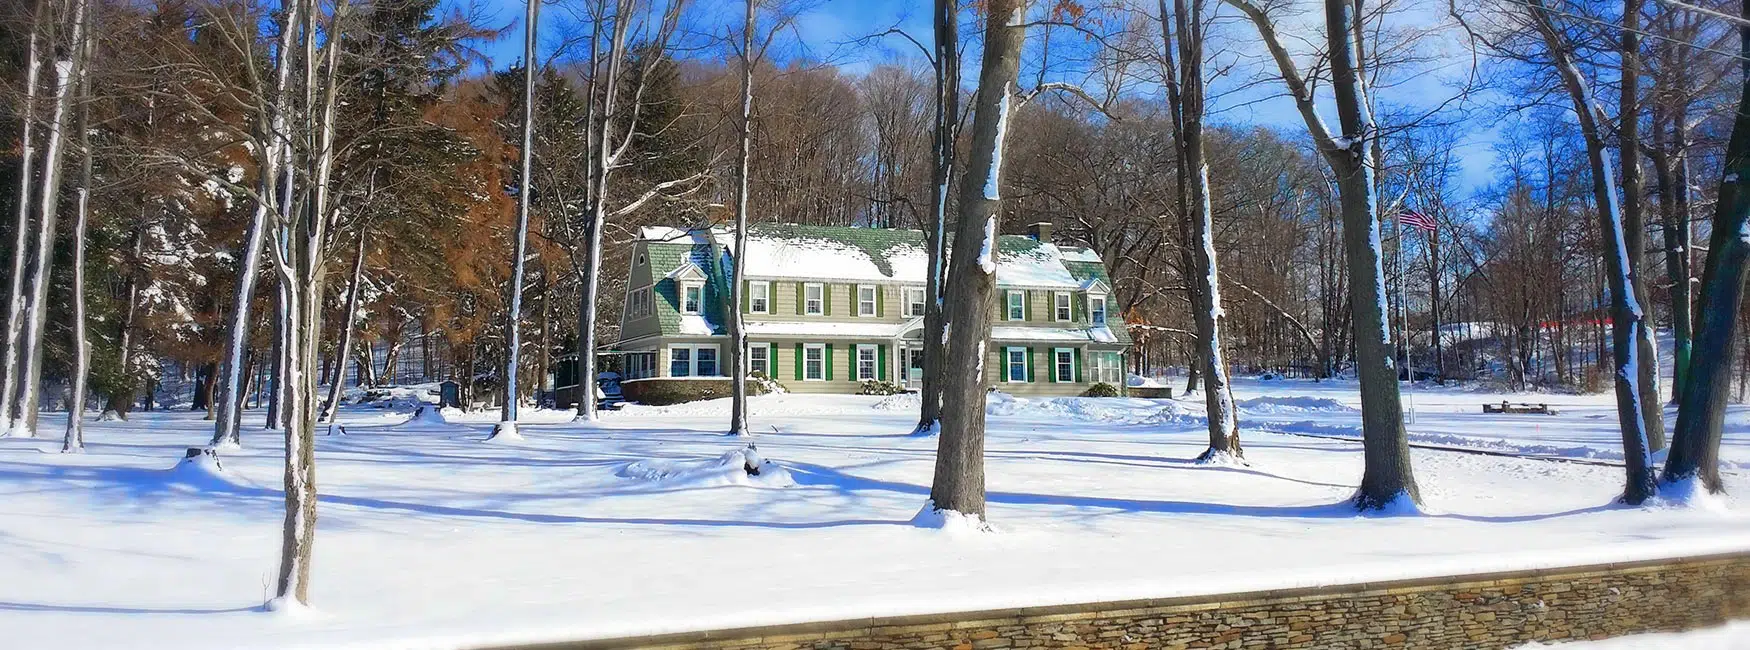 Maple Springs Lake Side Inn in snow